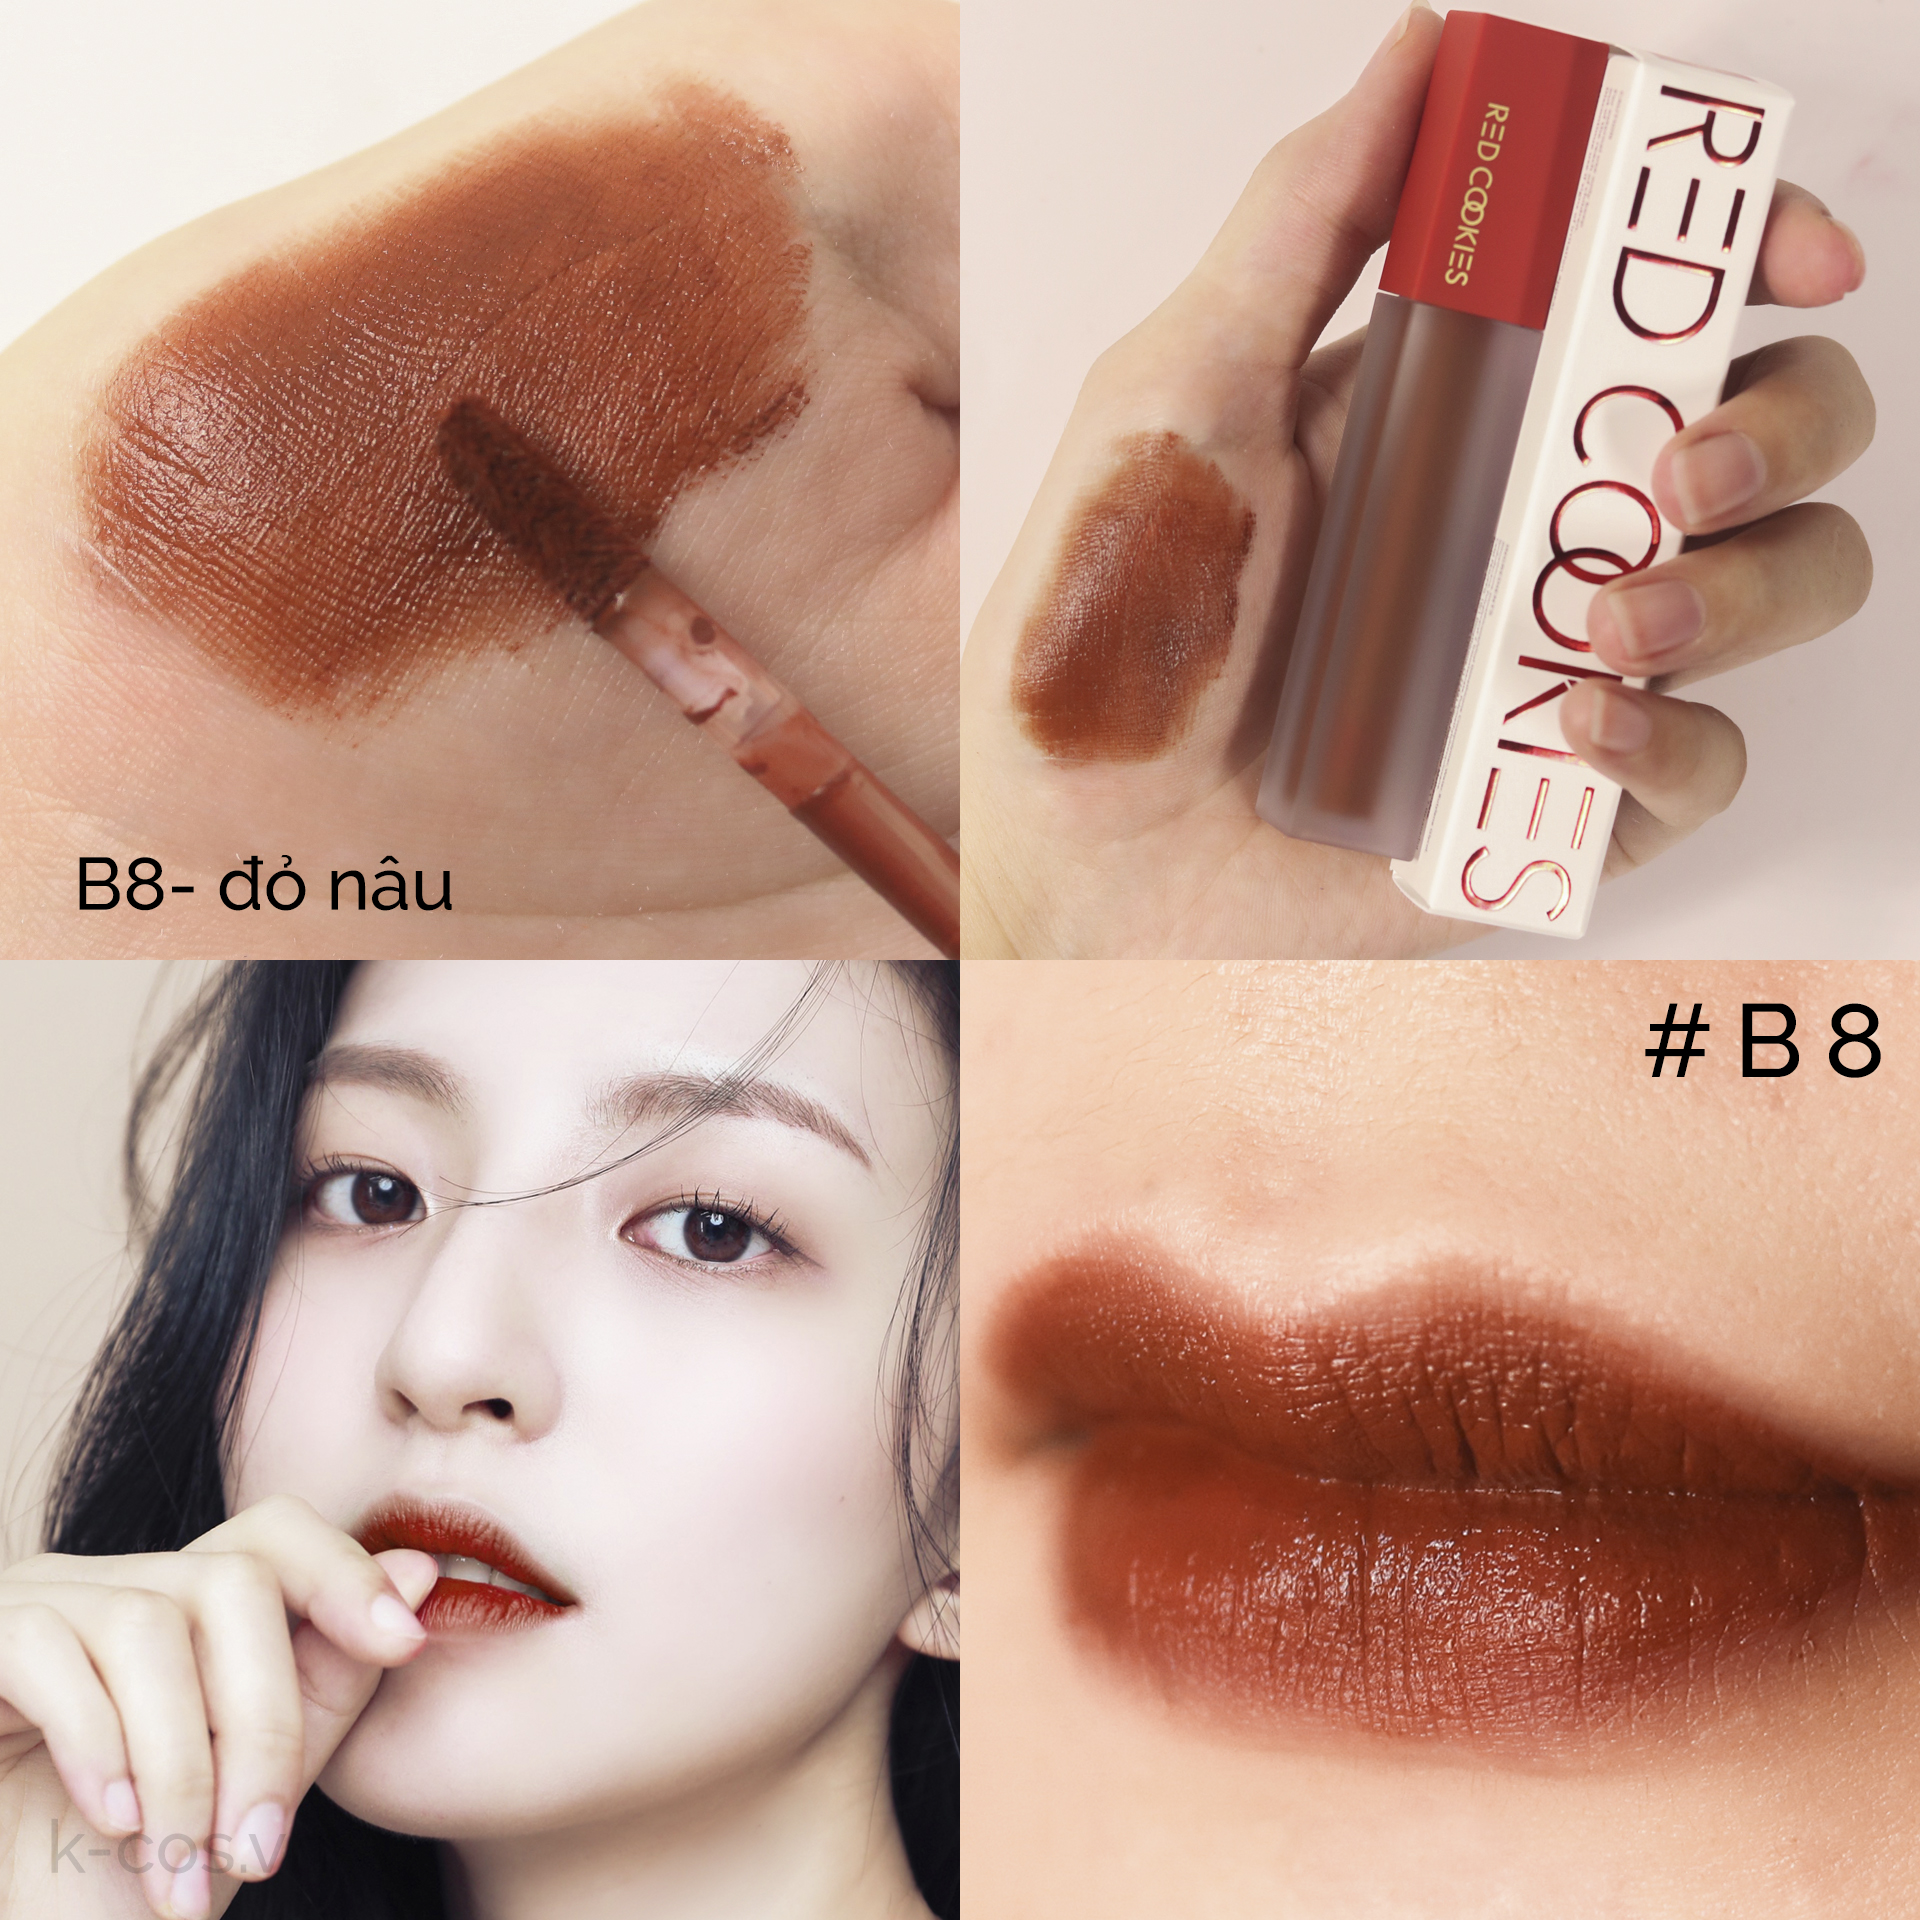 Son Lì Red Cookies Brownie Velcet Lip Hàn Quốc Màu B8 - Đỏ nâu (4gr )